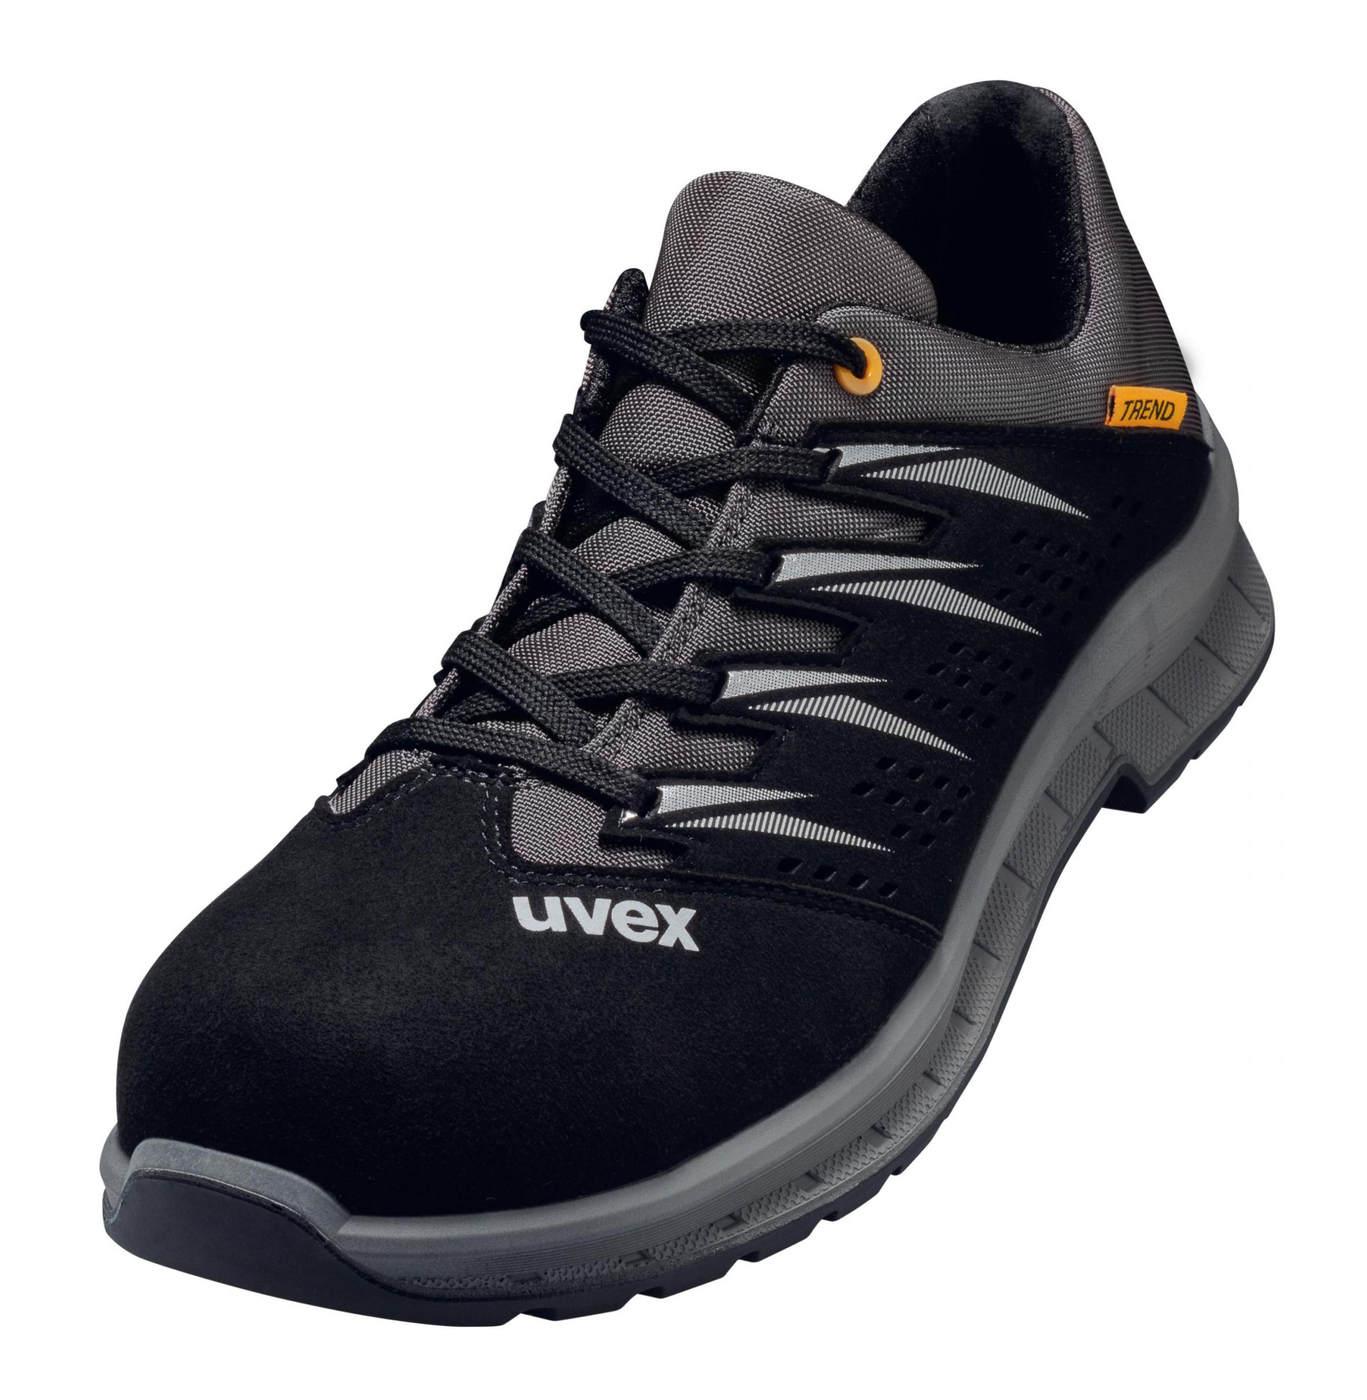 Obuv UVEX preforovaná,čierno šedá č.41 6947841 - Pracovná obuv | MasMasaryk